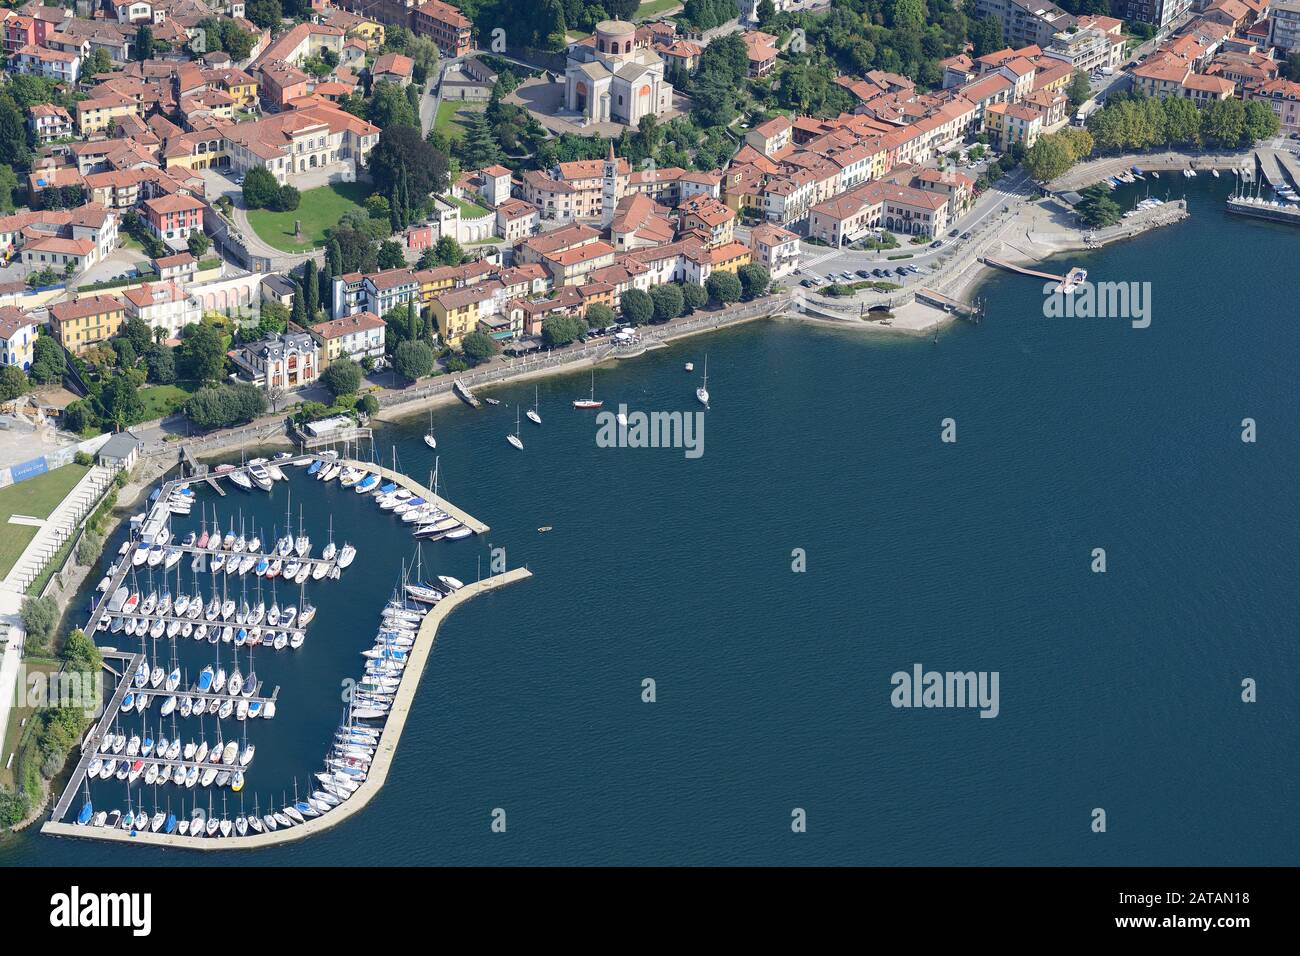 LUFTAUFNAHME. Malerische Stadt Laveno am See. Laveno-Mombello, Lago Maggiore, Provinz Varese, Lombardei, Italien. Stockfoto